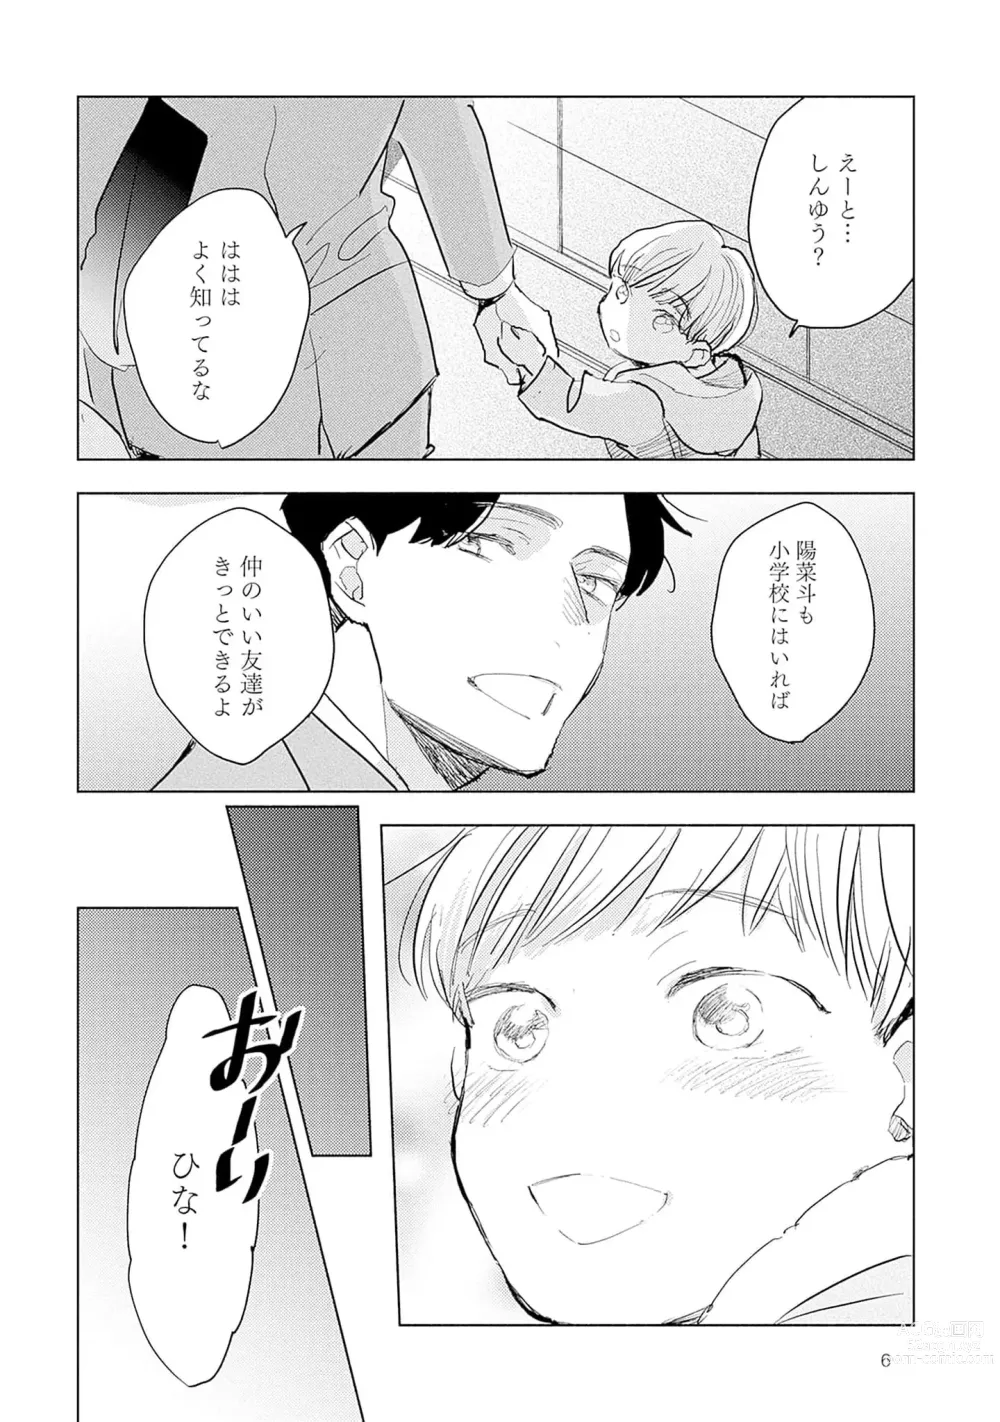 Page 8 of manga Strawberry na Days 2